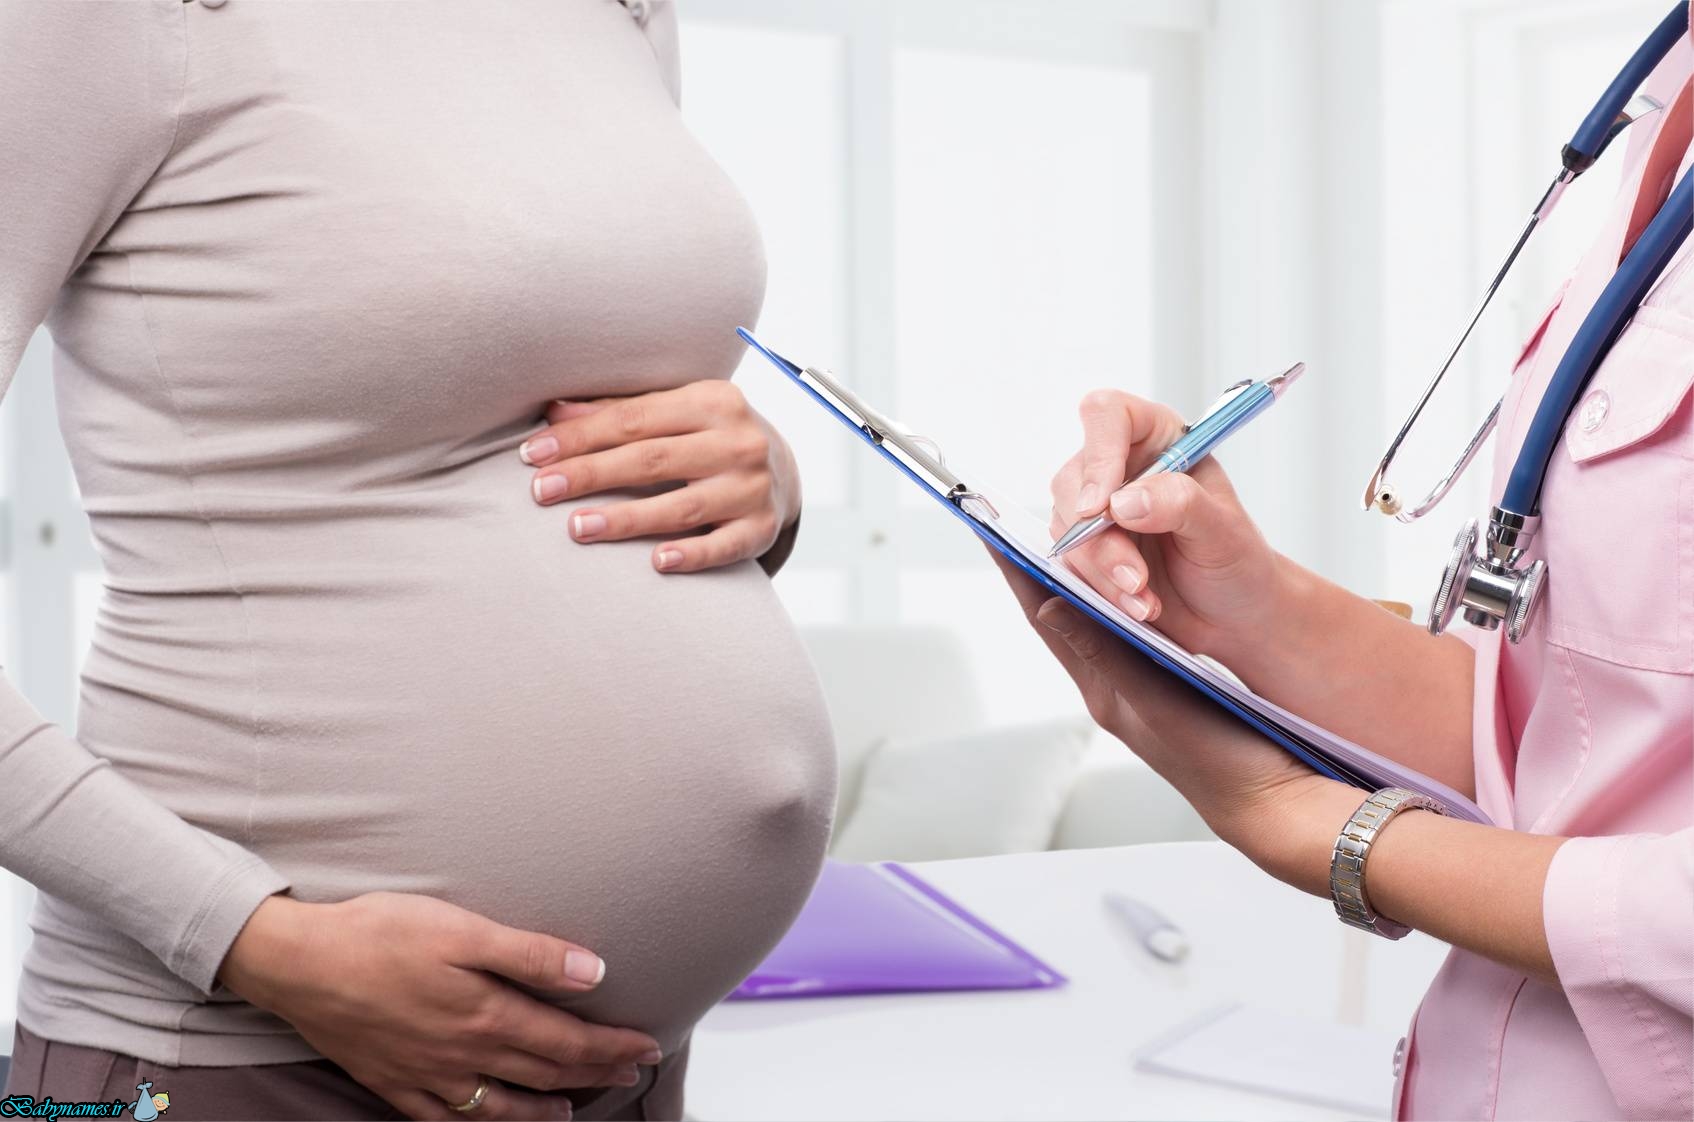 فشار خون چه تاثیری روی سلامت مادر و جنین دارد؟